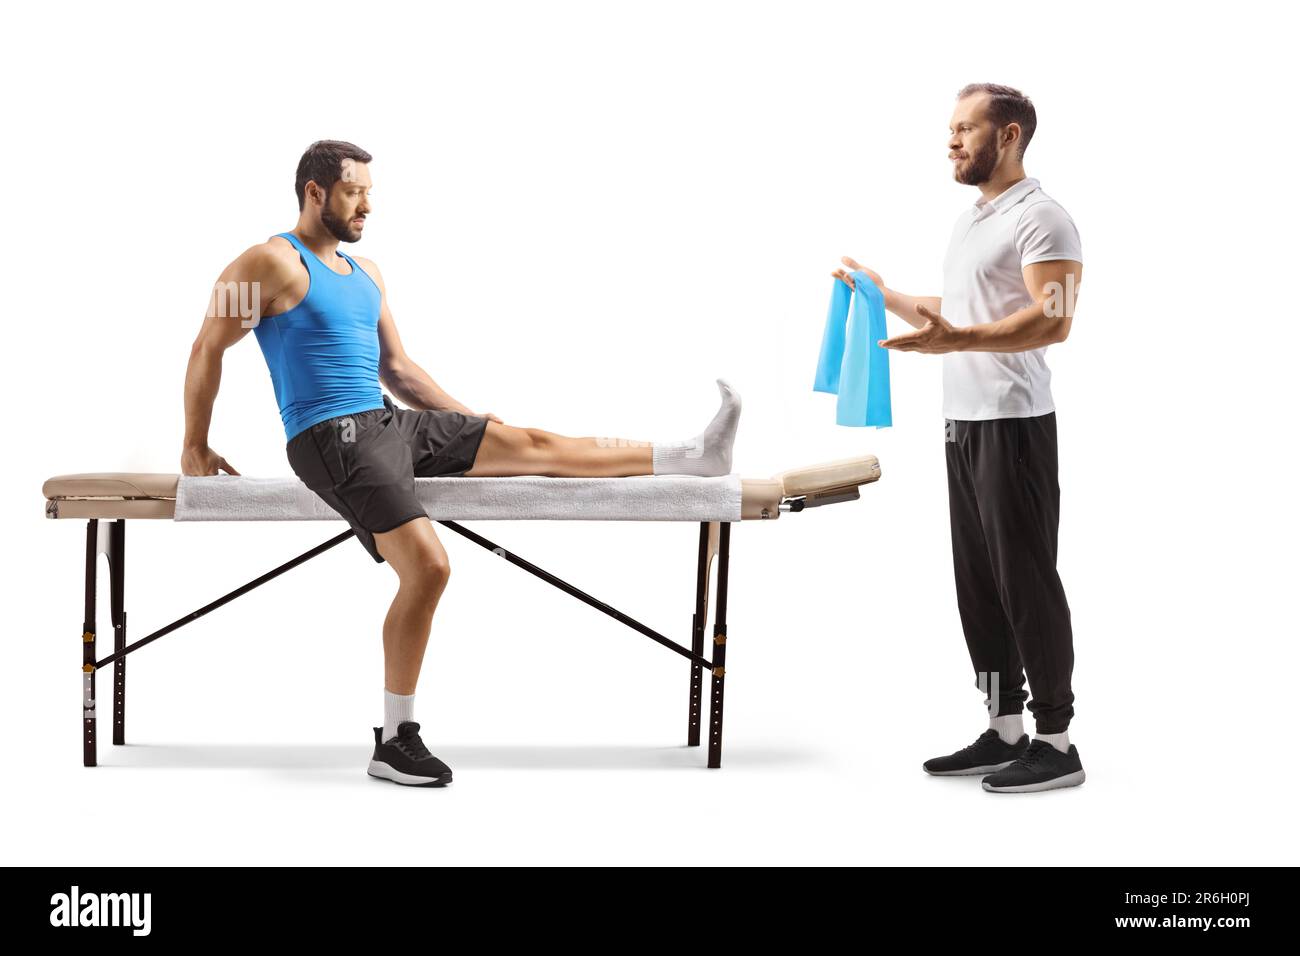 Physiothérapeute montrant l'exercice à un athlète masculin avec une jambe blessée isolée sur fond blanc Banque D'Images